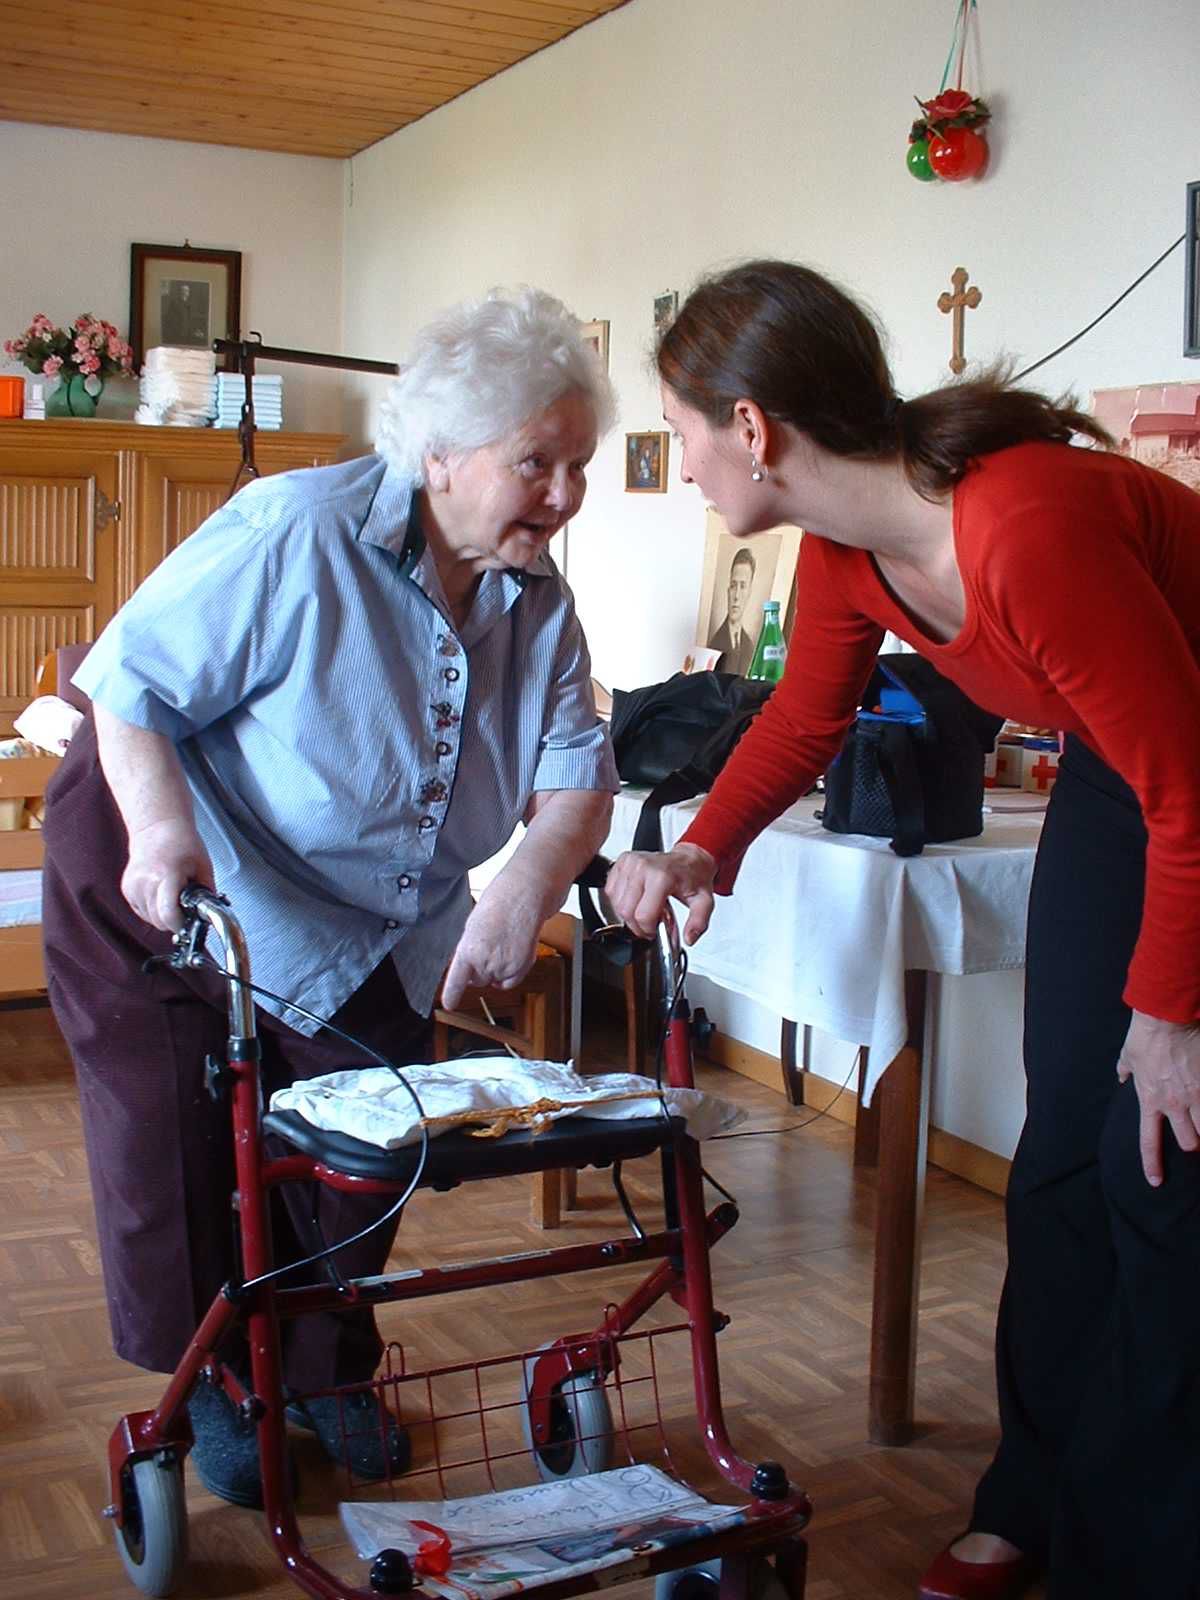 Wohnanpassung und sinnvolle Hilfsmittel ermöglichen es älteren Menschen mit Demenz im gewohnten Wohnumfeld zu verbleiben. Die Ökumenischen Zentrale bietet dazu am 14. Juni eine kostenlose Informationsveranstaltung Seniorentreff an. (Symbolfoto: Pixabay)